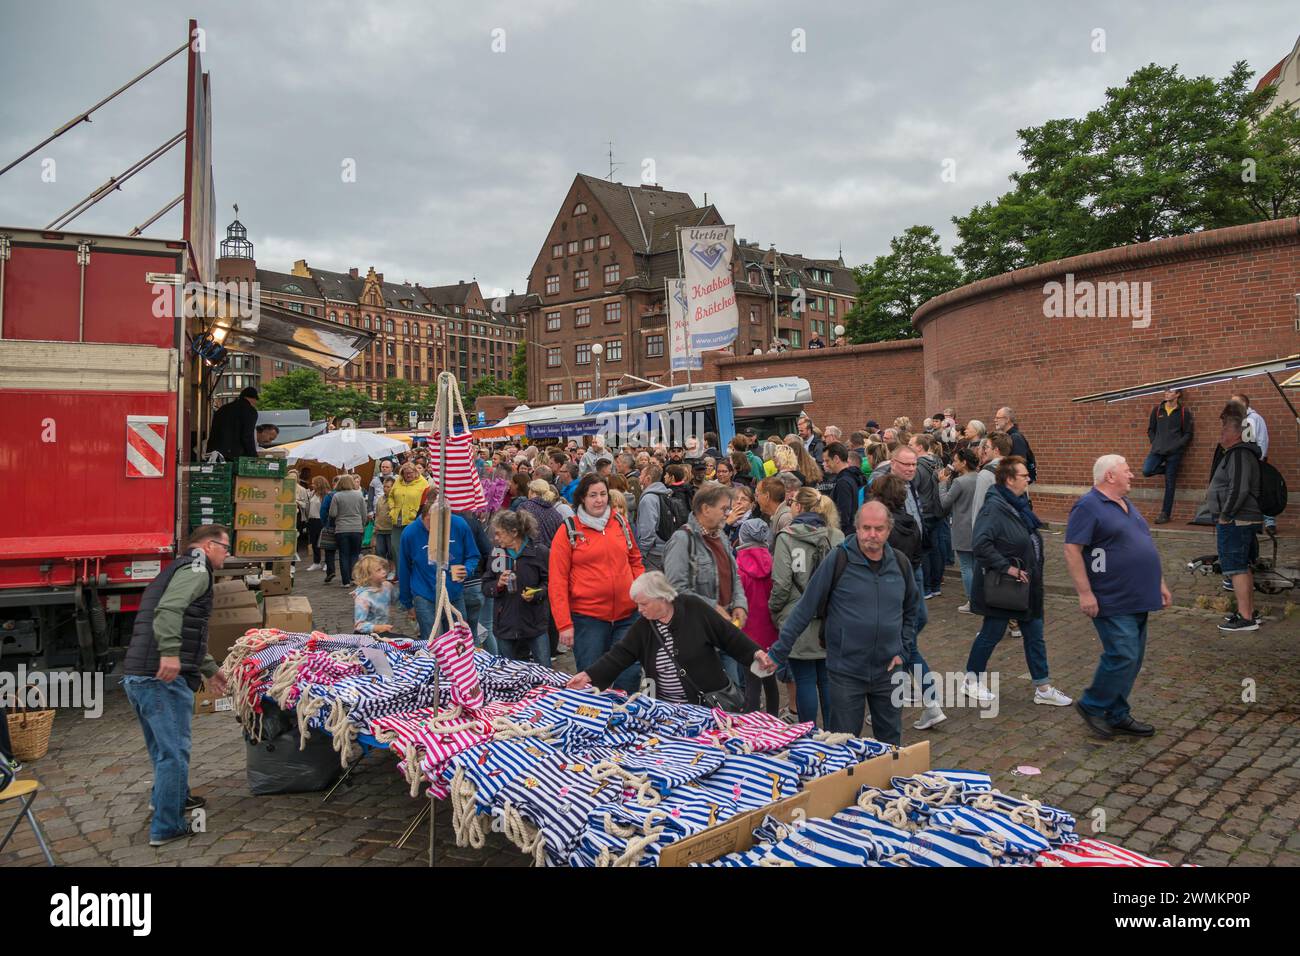 Hambourg, Allemagne - 17 juillet 2022 : foule de touristes marchant et faisant du shopping au célèbre marché aux poissons de Hambourg (Fischmarkt) Banque D'Images